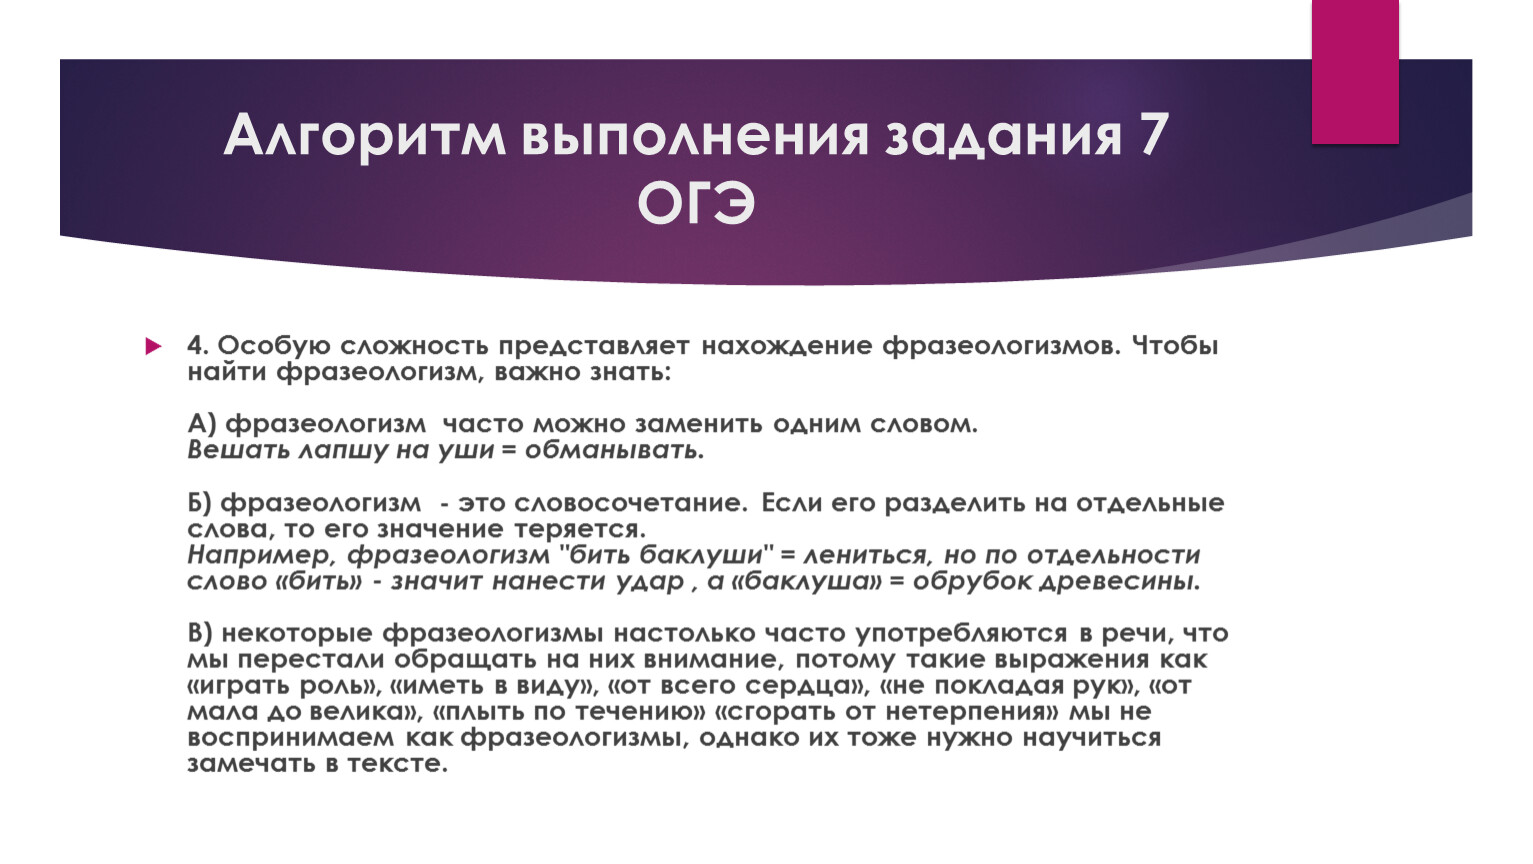 ОГЭ 7 задание теория. Алгоритм выполнения задания 4 ОГЭ по русскому. Алгоритм выполнения задания 2 ОГЭ русский. Алгоритм выполнения тестовых заданий 10 класс к 11 заданию.